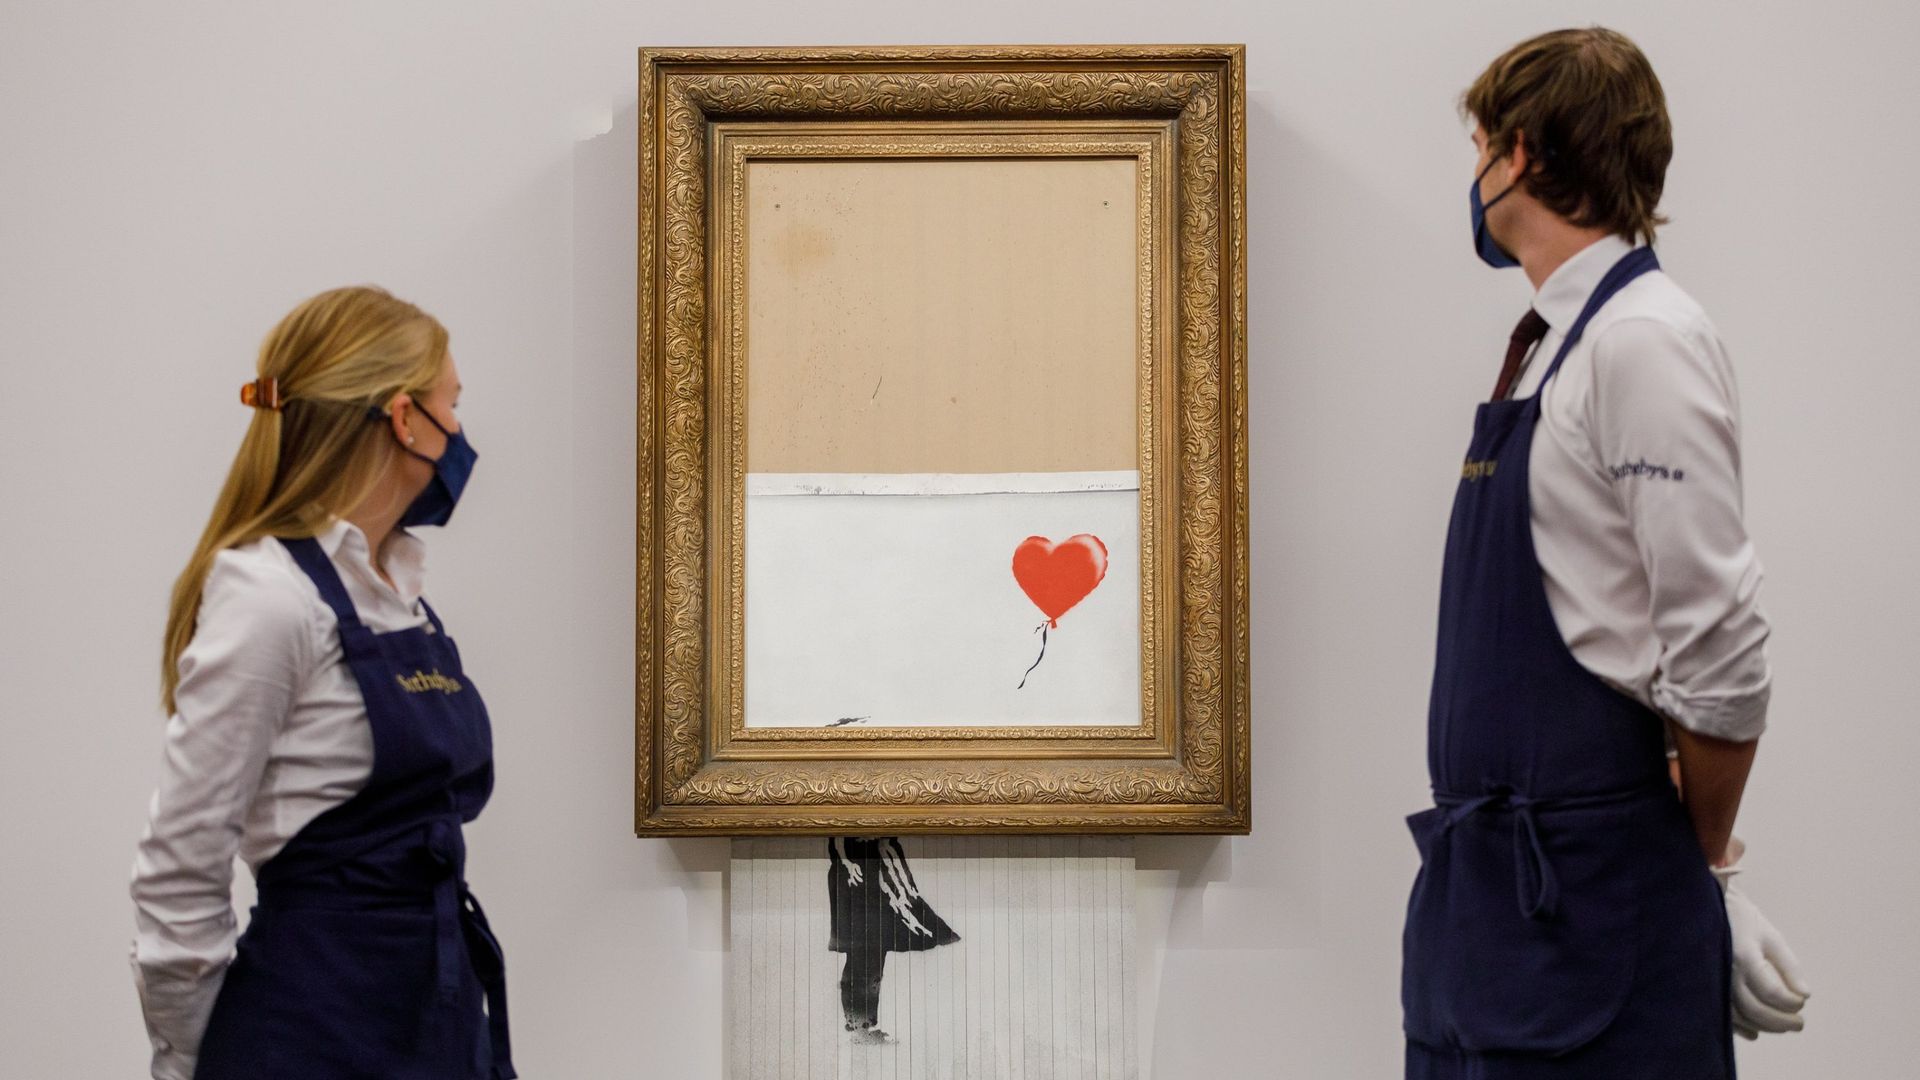 L’œuvre "Love is in the Bin" (2018) de Banksy est installée chez Sotheby’s le 03 septembre 2021 à Londres, en Angleterre.